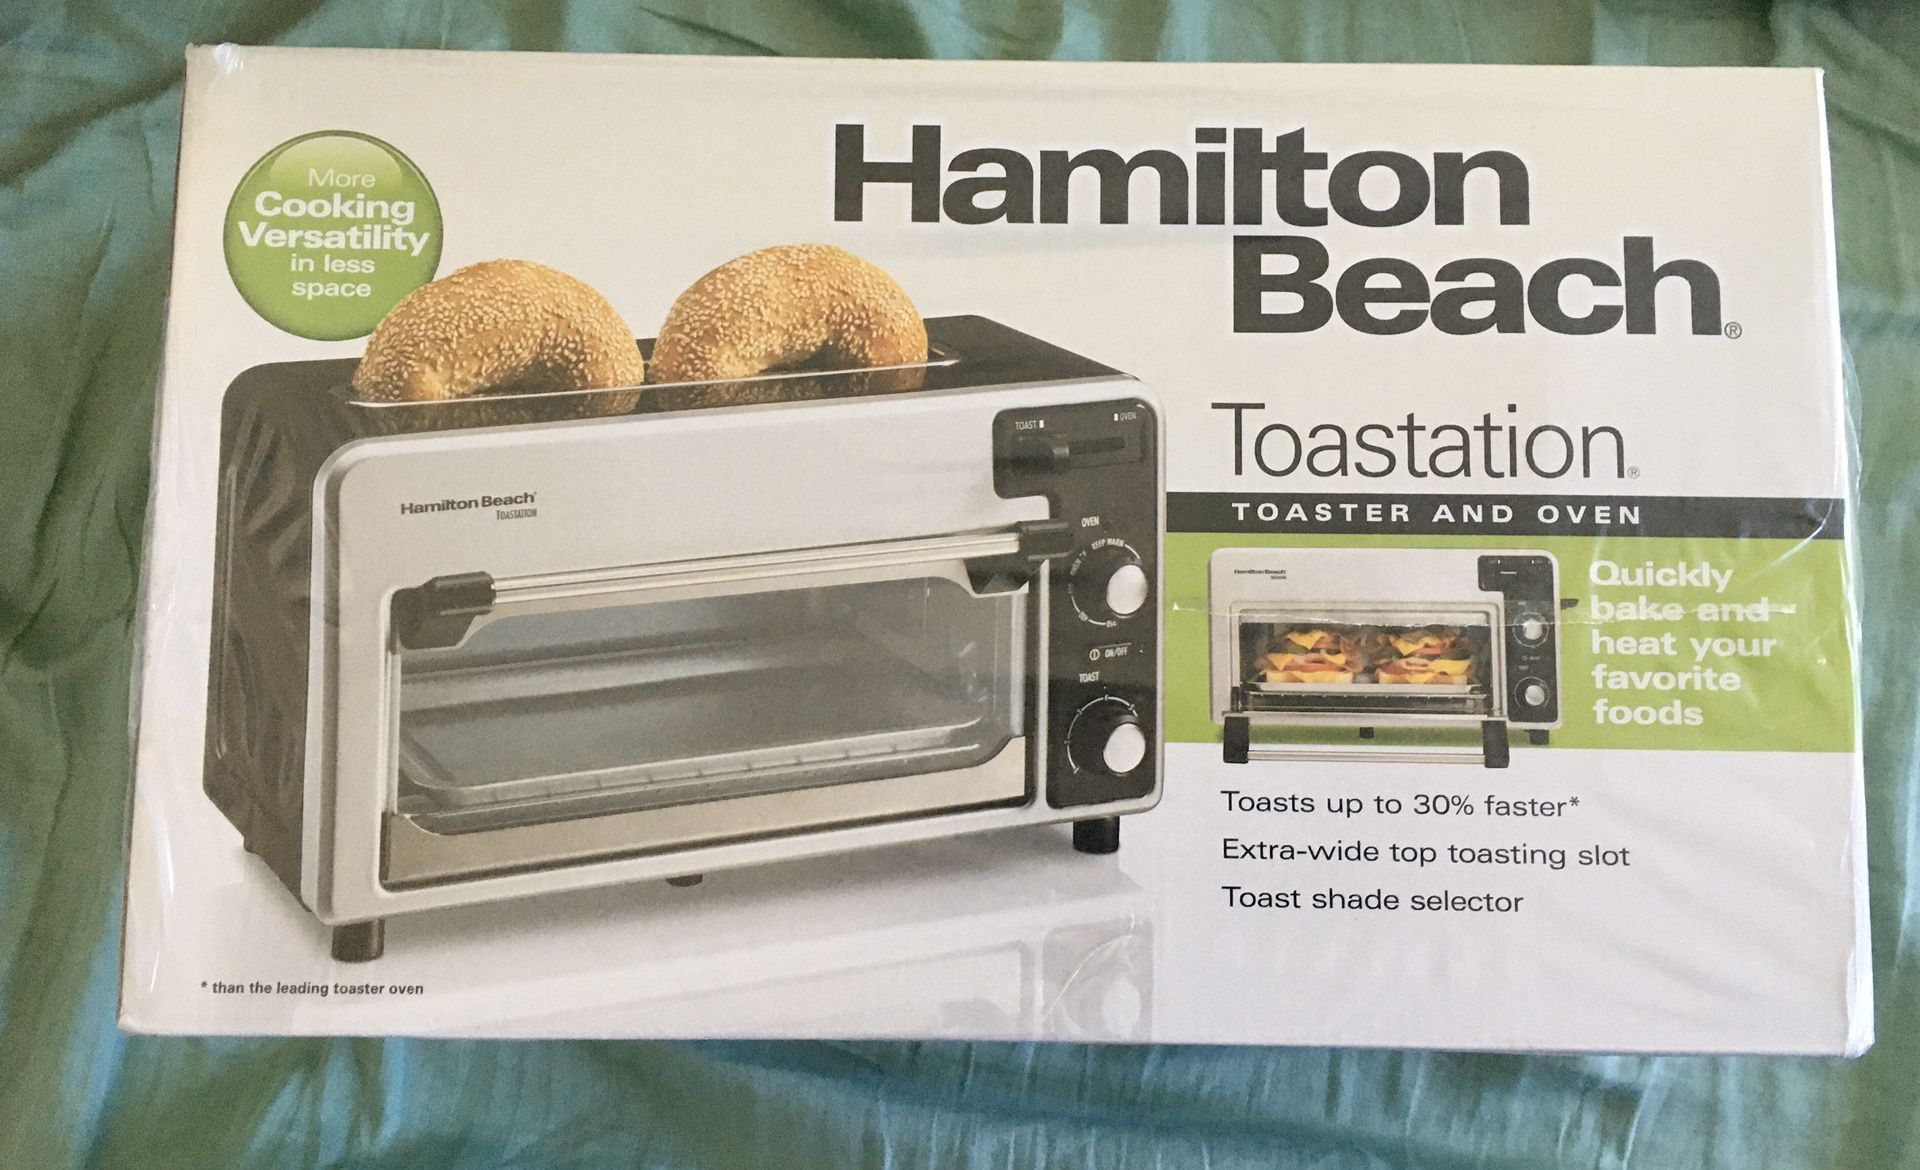 Hamilton Beach Toastation 22720 Toaster Oven & Toaster Combo Space